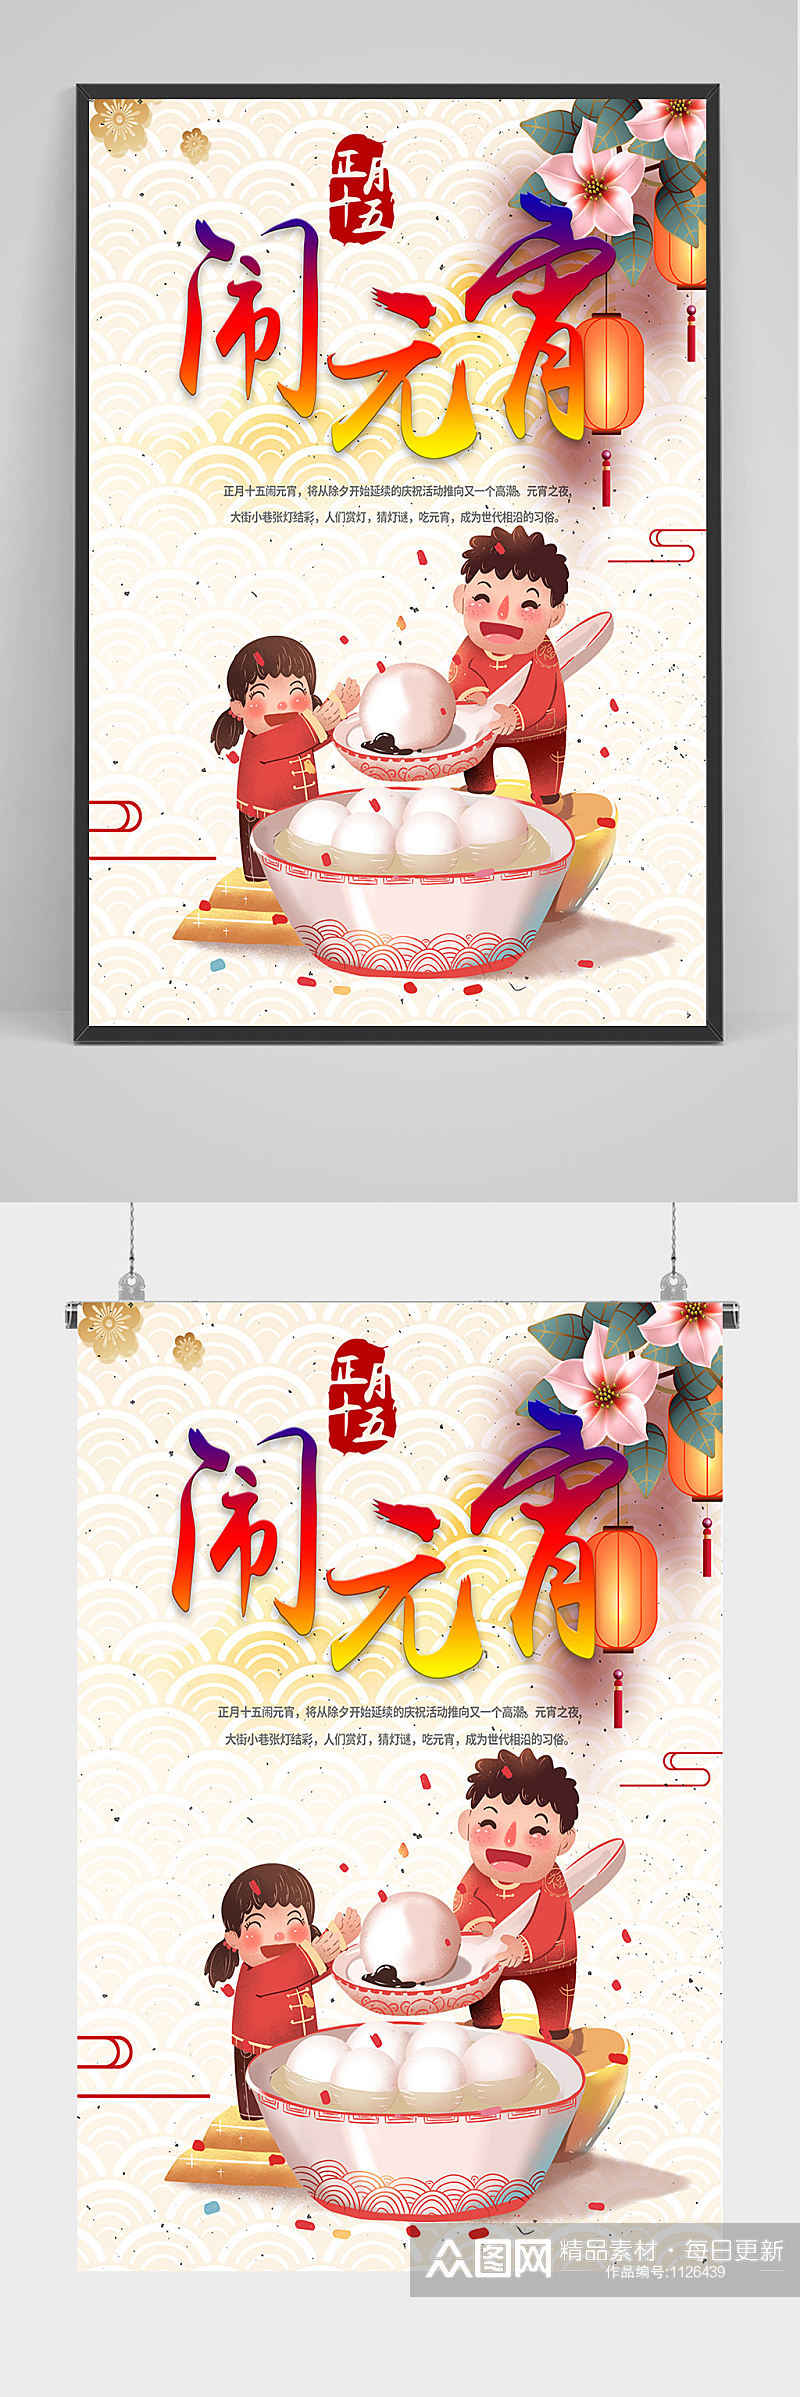 中国风闹元宵海报设计素材